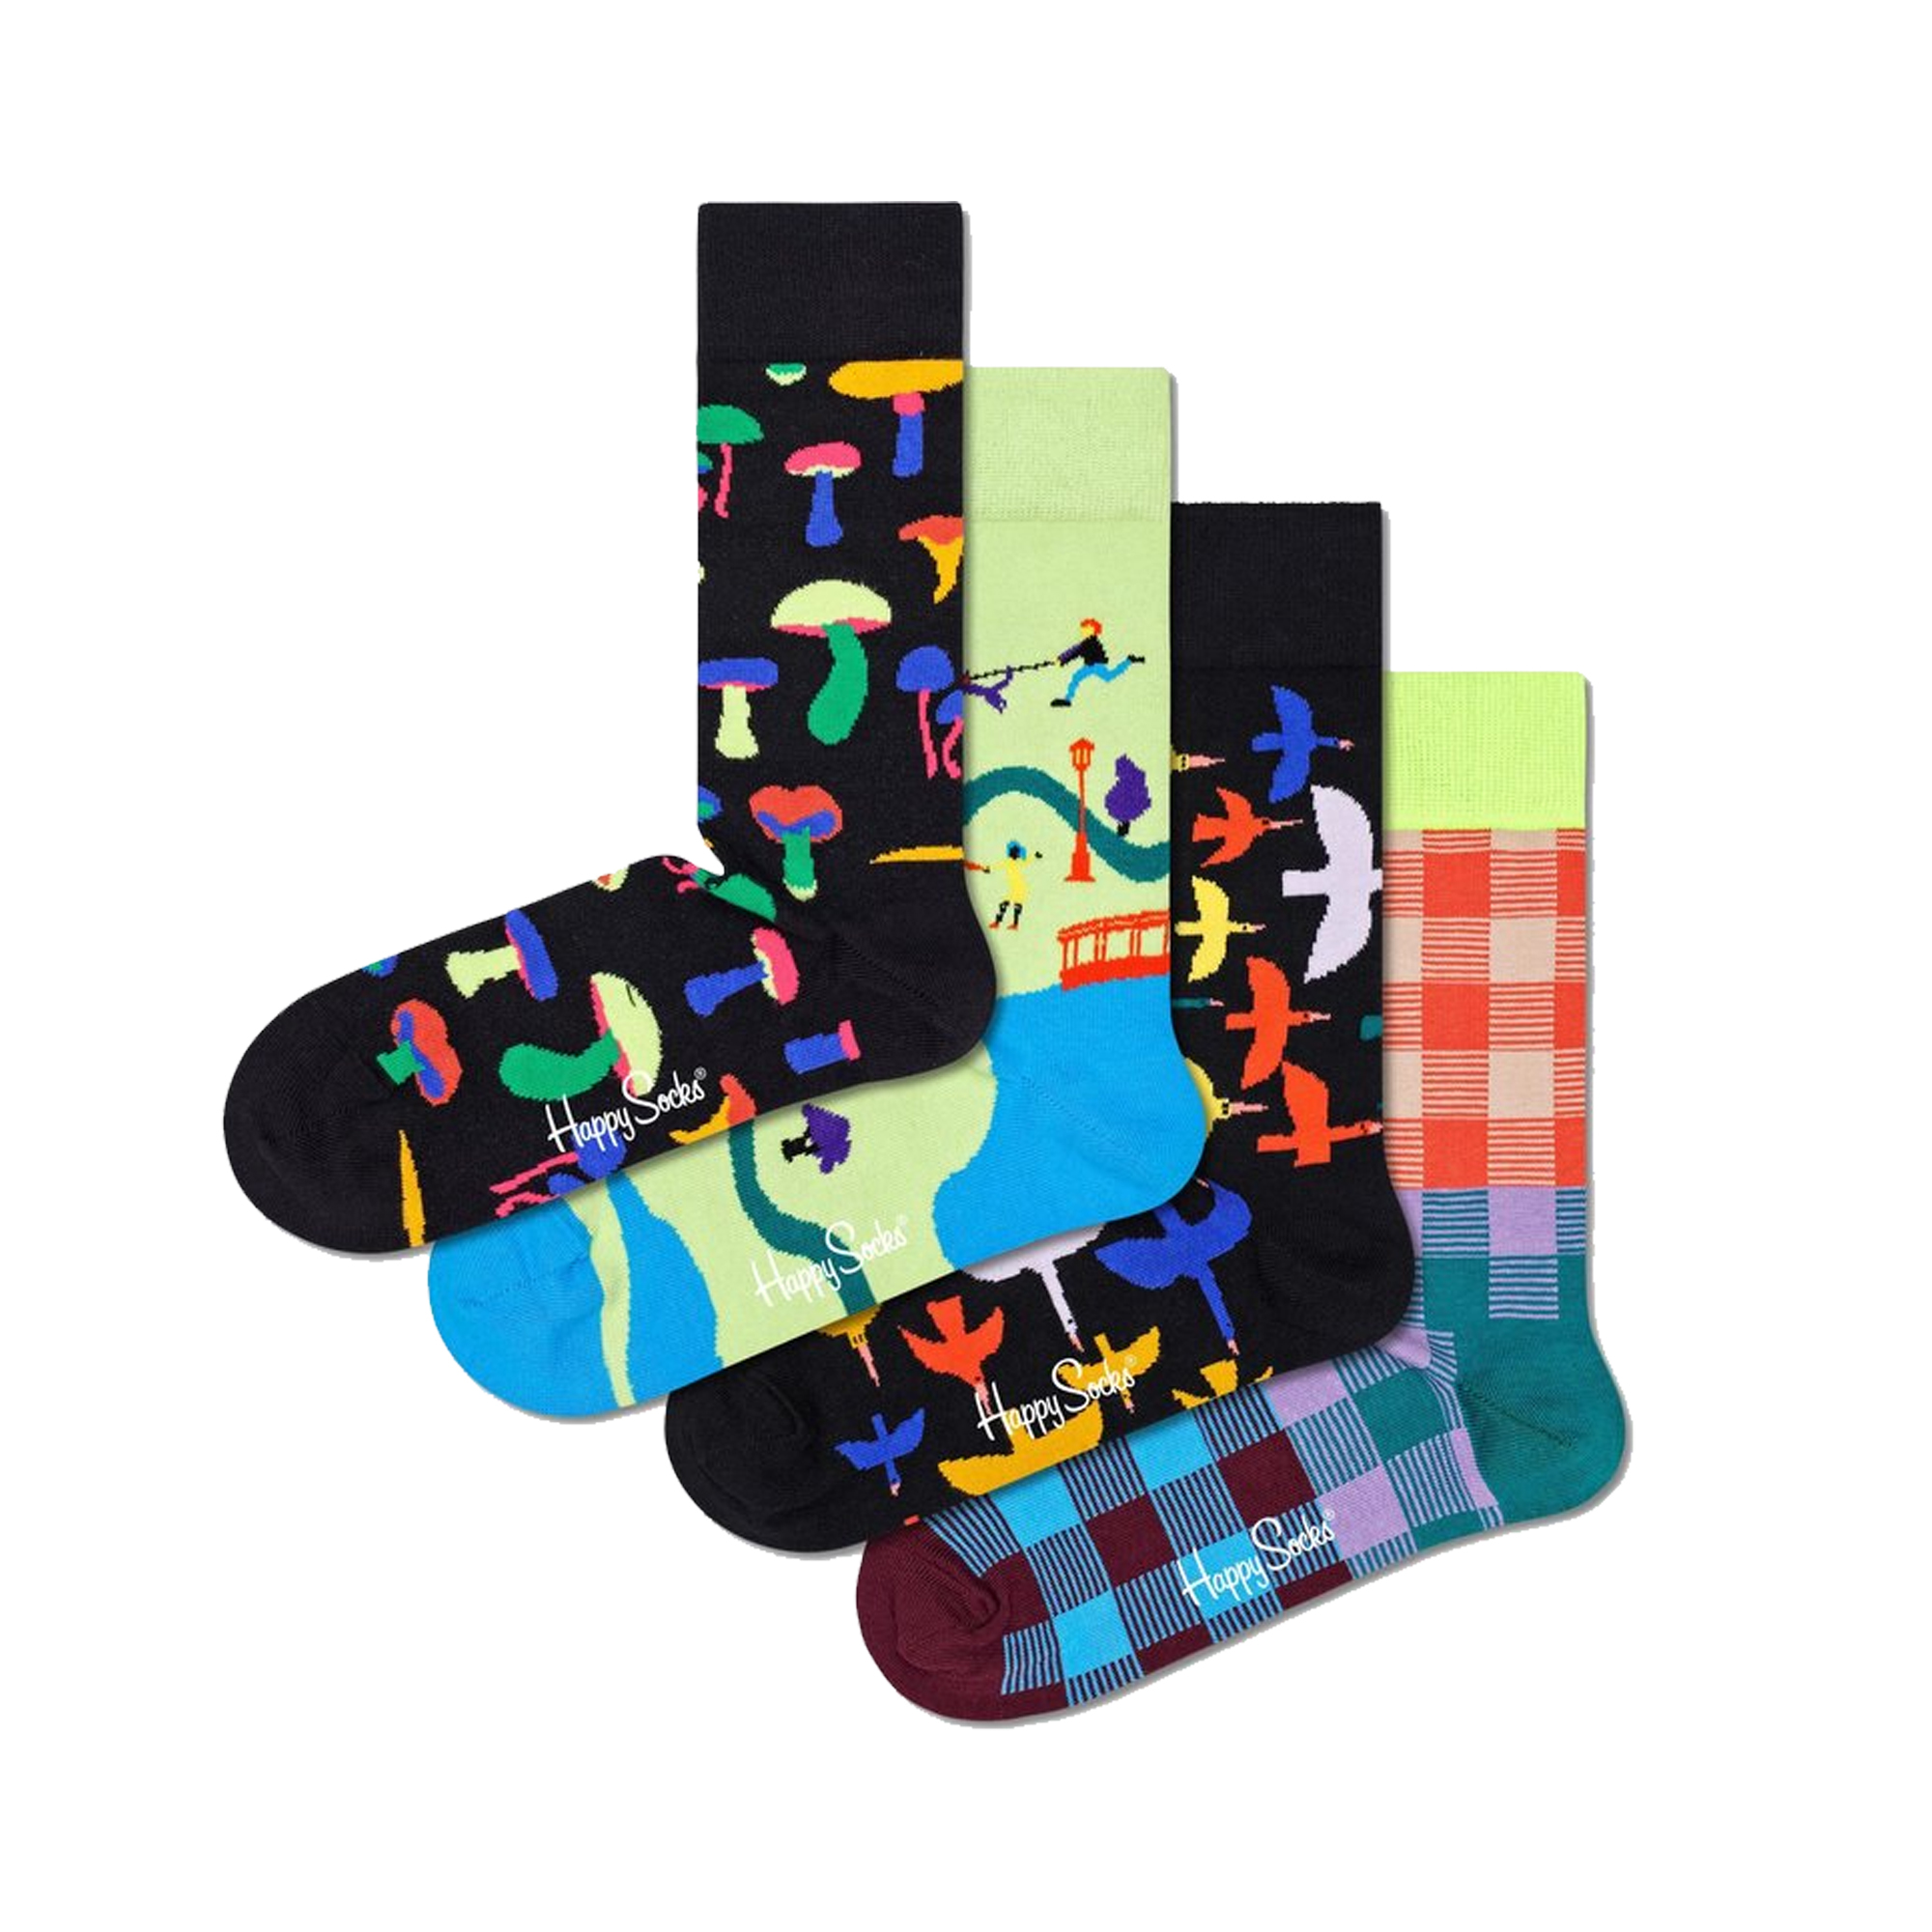 Pack 4 Pares De Meias Happy Socks Into The Park Gift Set - multicolor - 